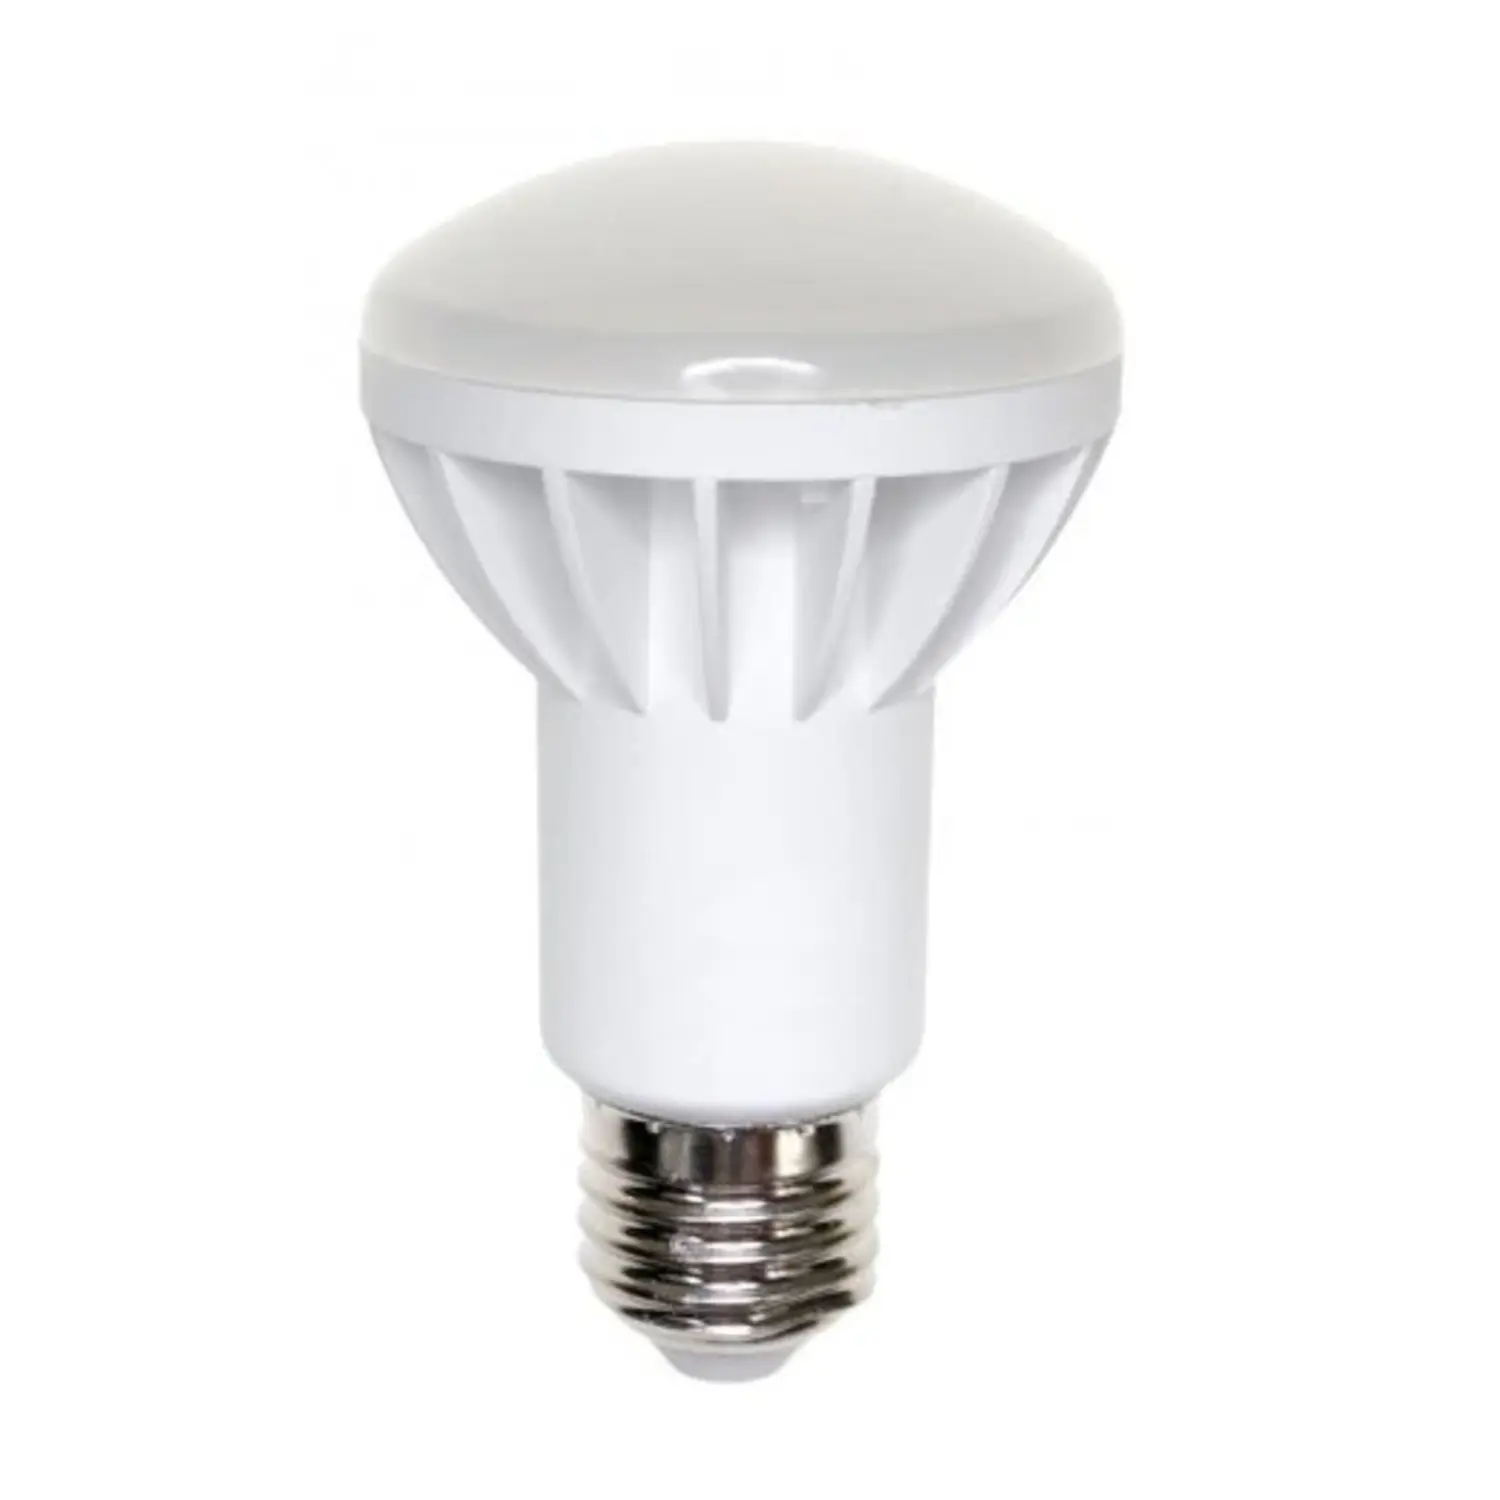 immagine del prodotto lampadina led spot r63 e27 8 watt luce fredda woj12875 spe woj12875